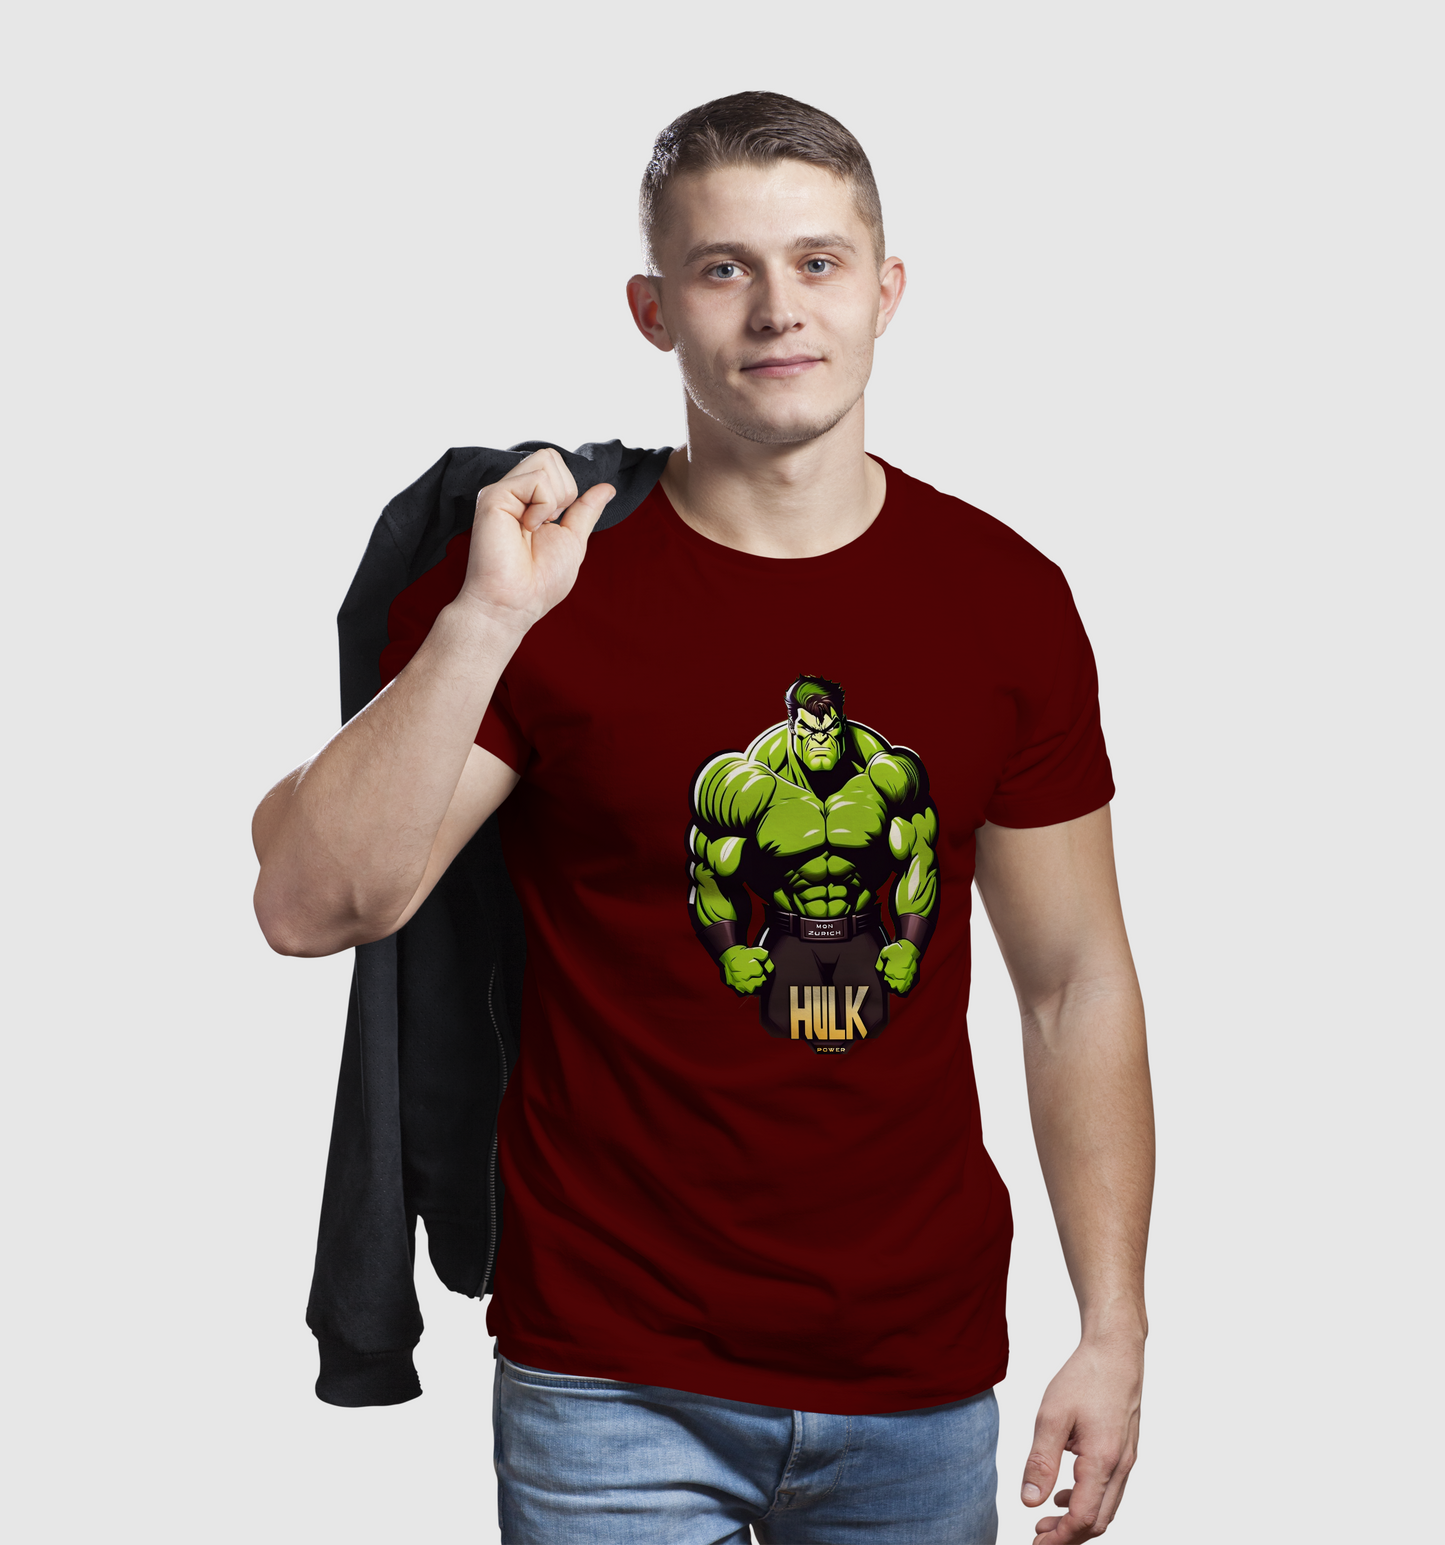 Hulk Power T-Shirt In Dark + Light - Mon Zurich Originals